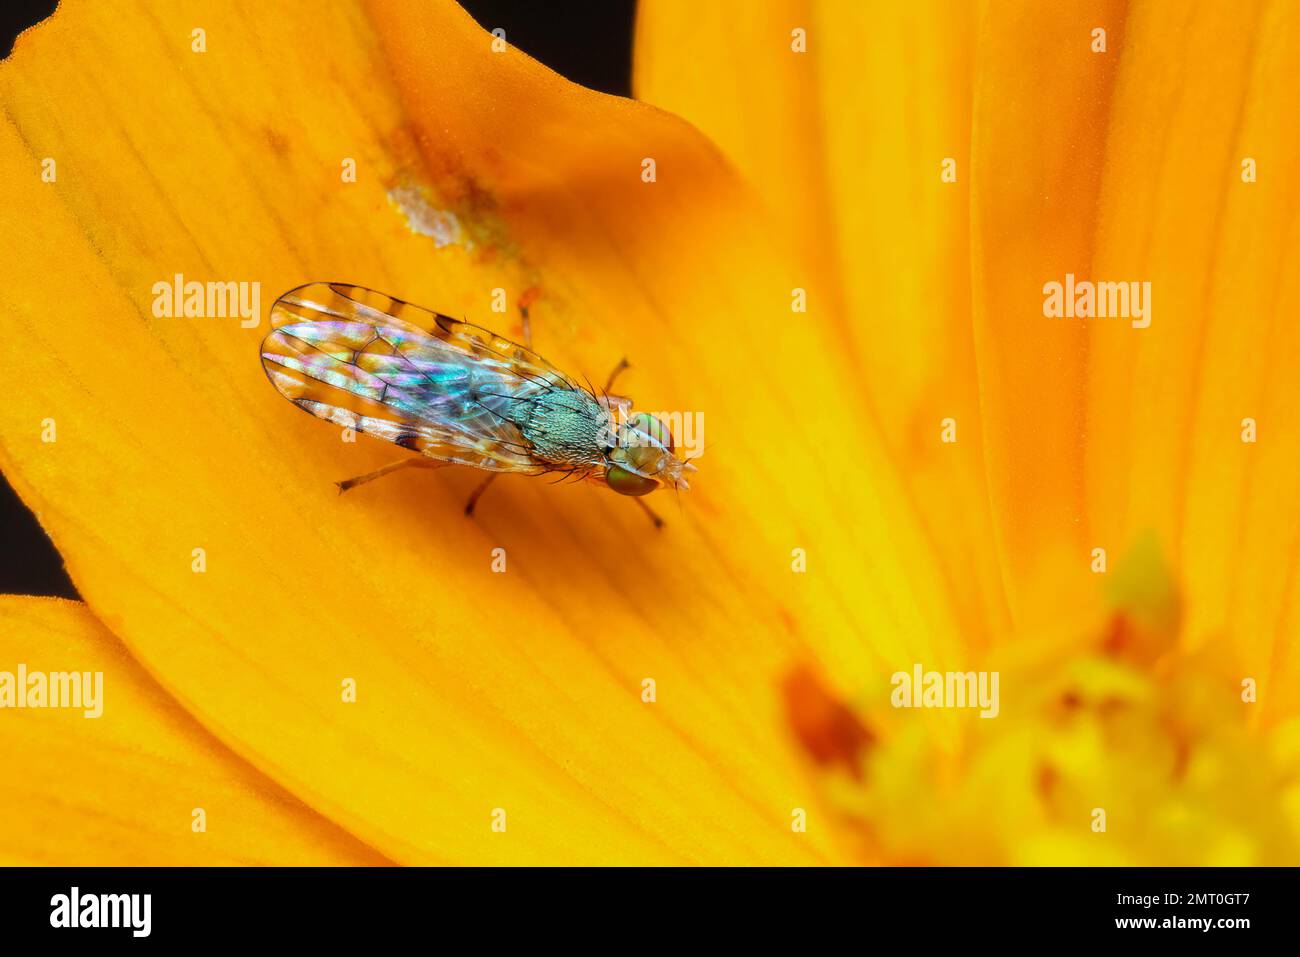 Image de la larve mouche aimée à pois (Neotephritis finalis) sur une fleur jaune sur fond de nature. Insecte. Animal. Banque D'Images